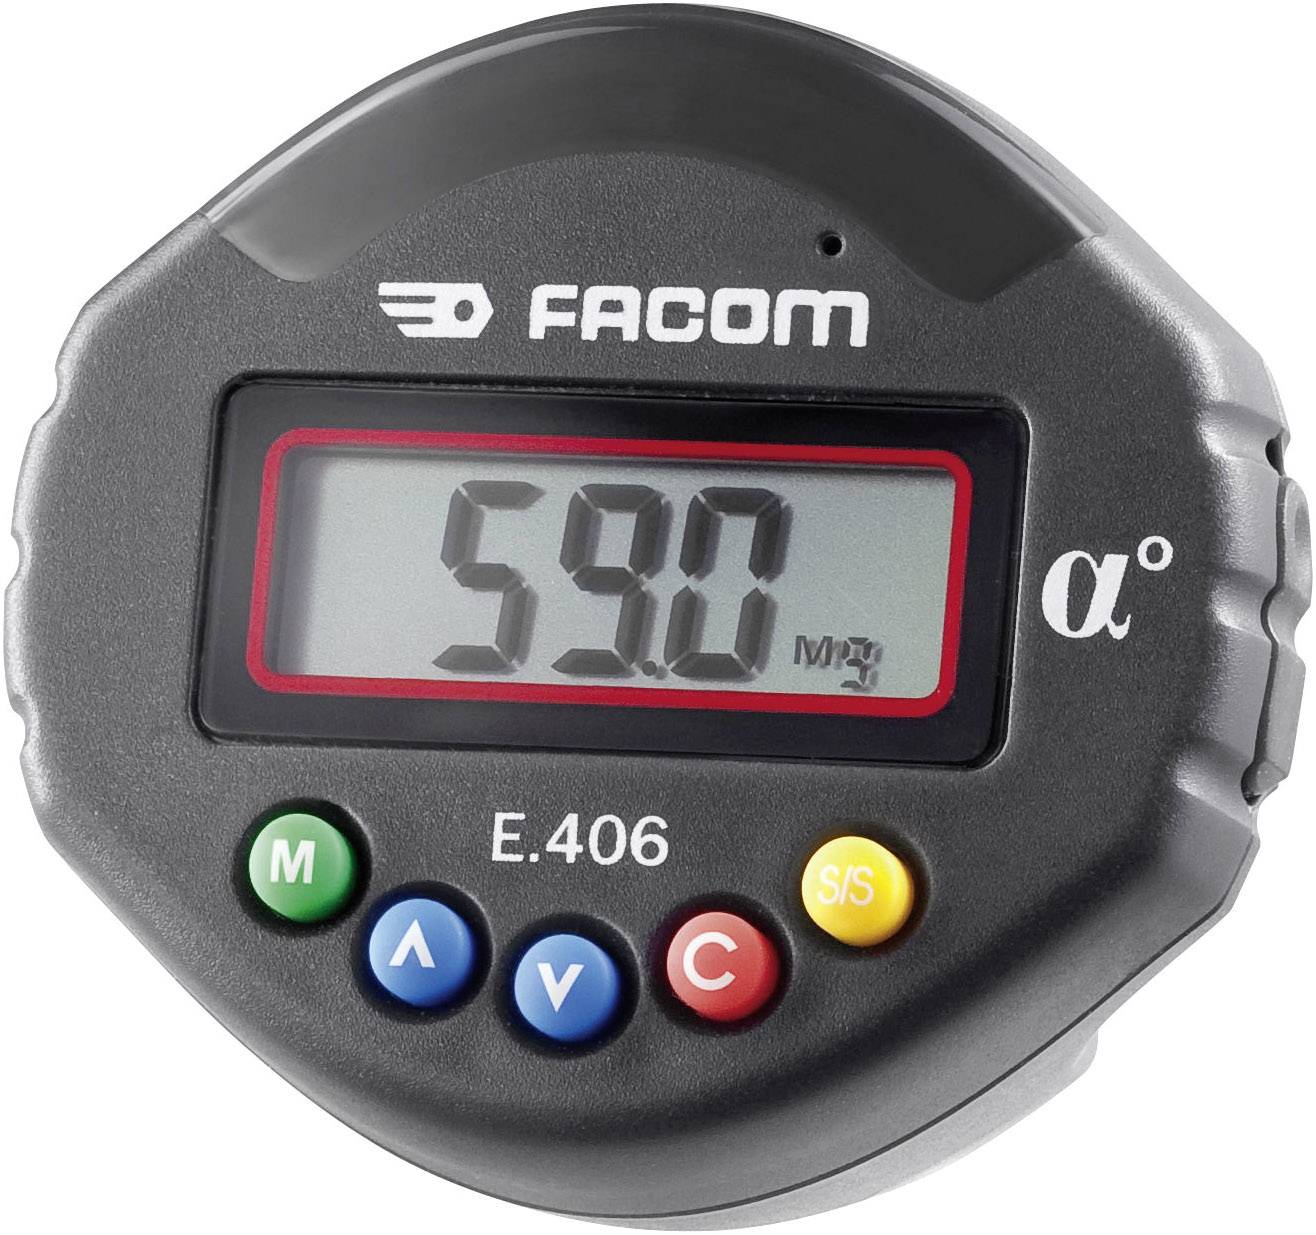 Elektronischer Winkel-Adapter Facom E.406 für ein ganz einfaches und genaues Winkel anziehen